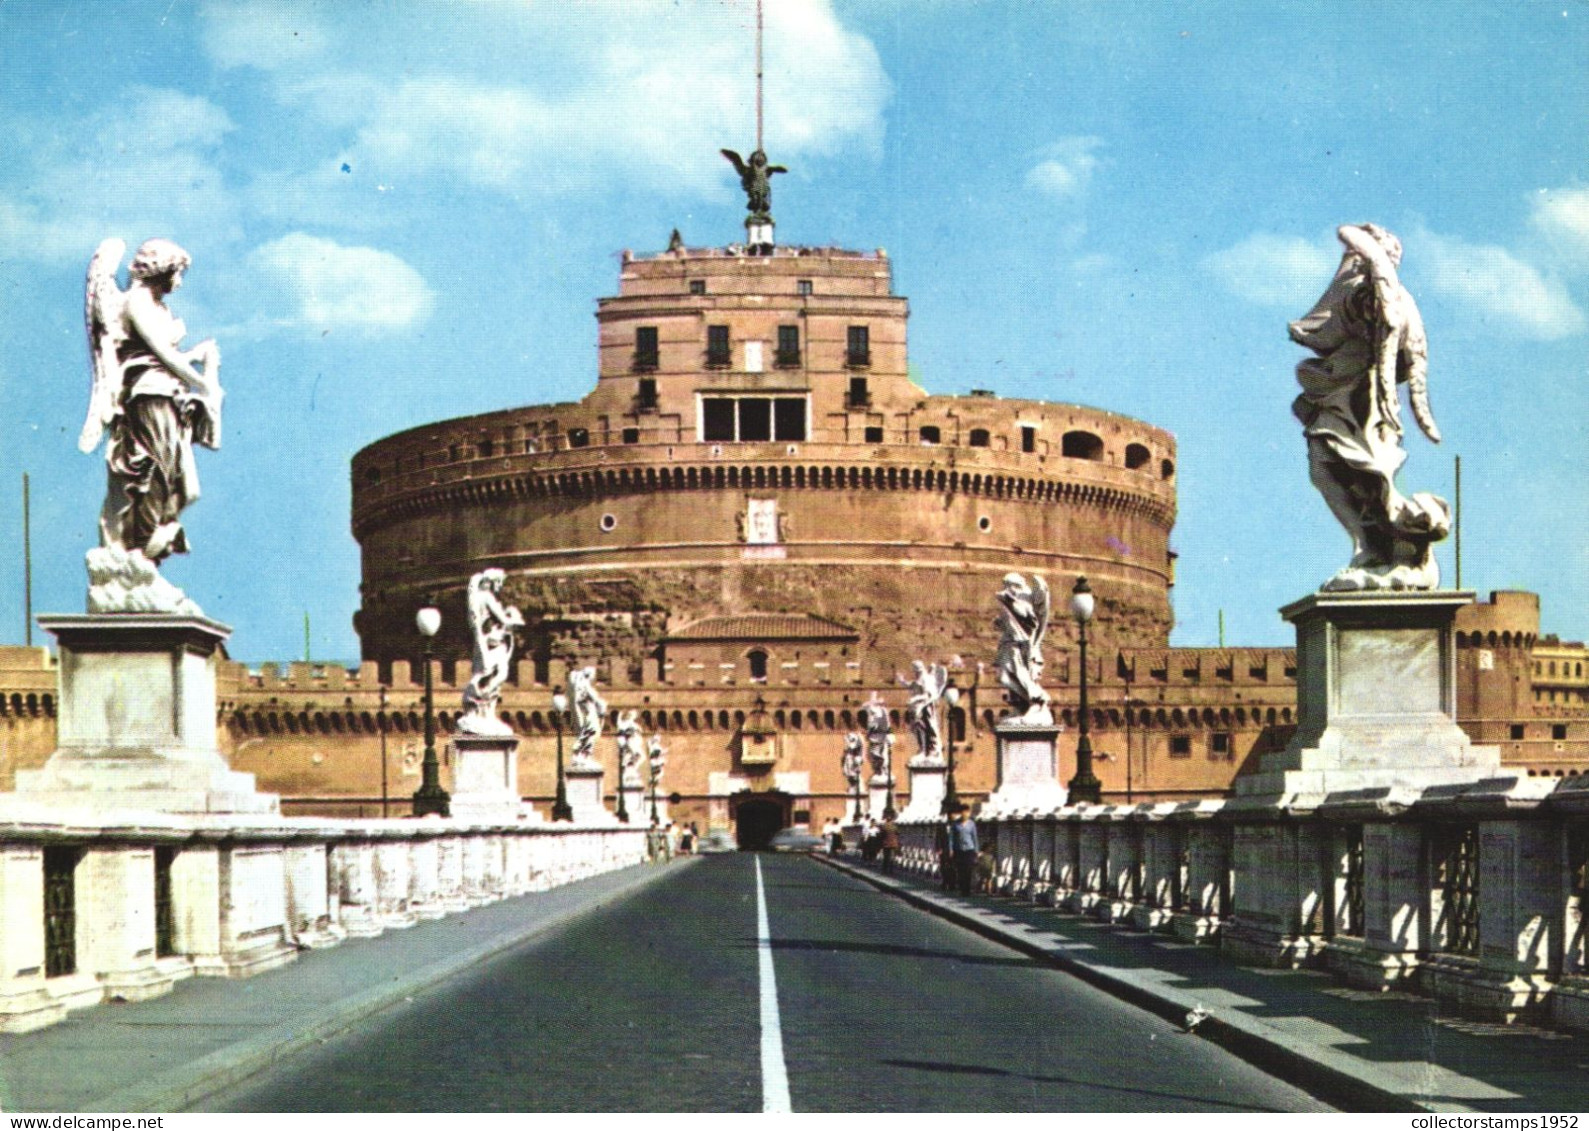 ROME, SAINT ANGELO BRIDGE, CASTLE, ARCHITECTURE, STATUE, ITALY - Brücken